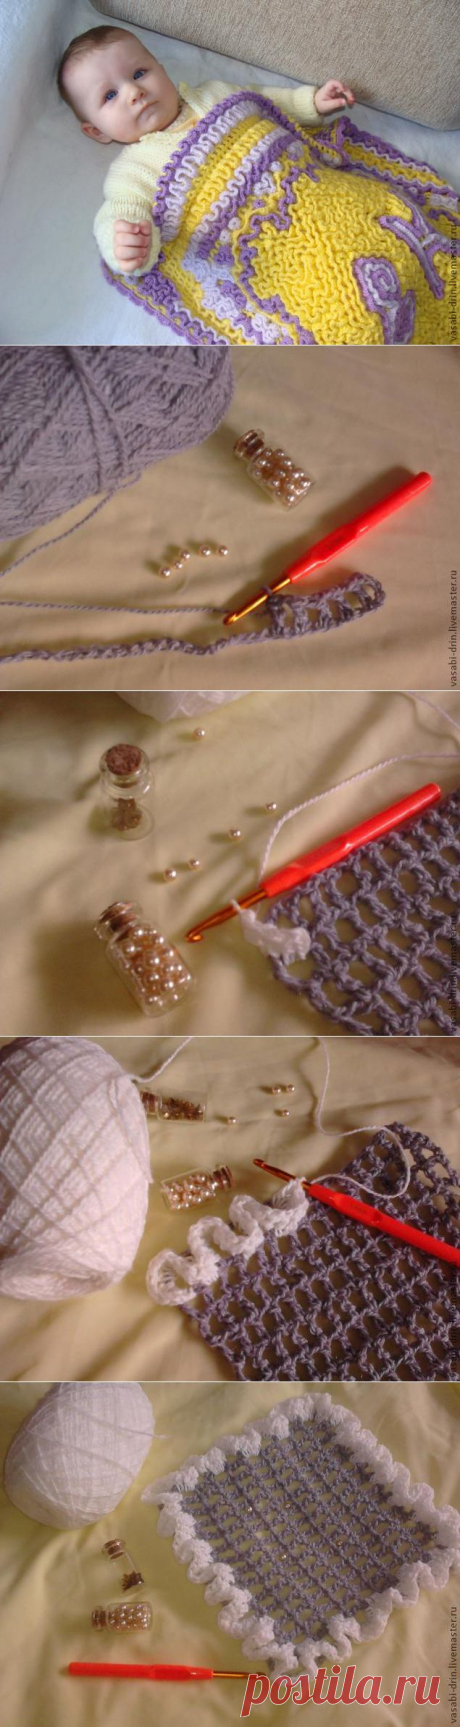 Детский плед, выполненный в технике объемного вязания. - Ярмарка Мастеров - ручная работа, handmade